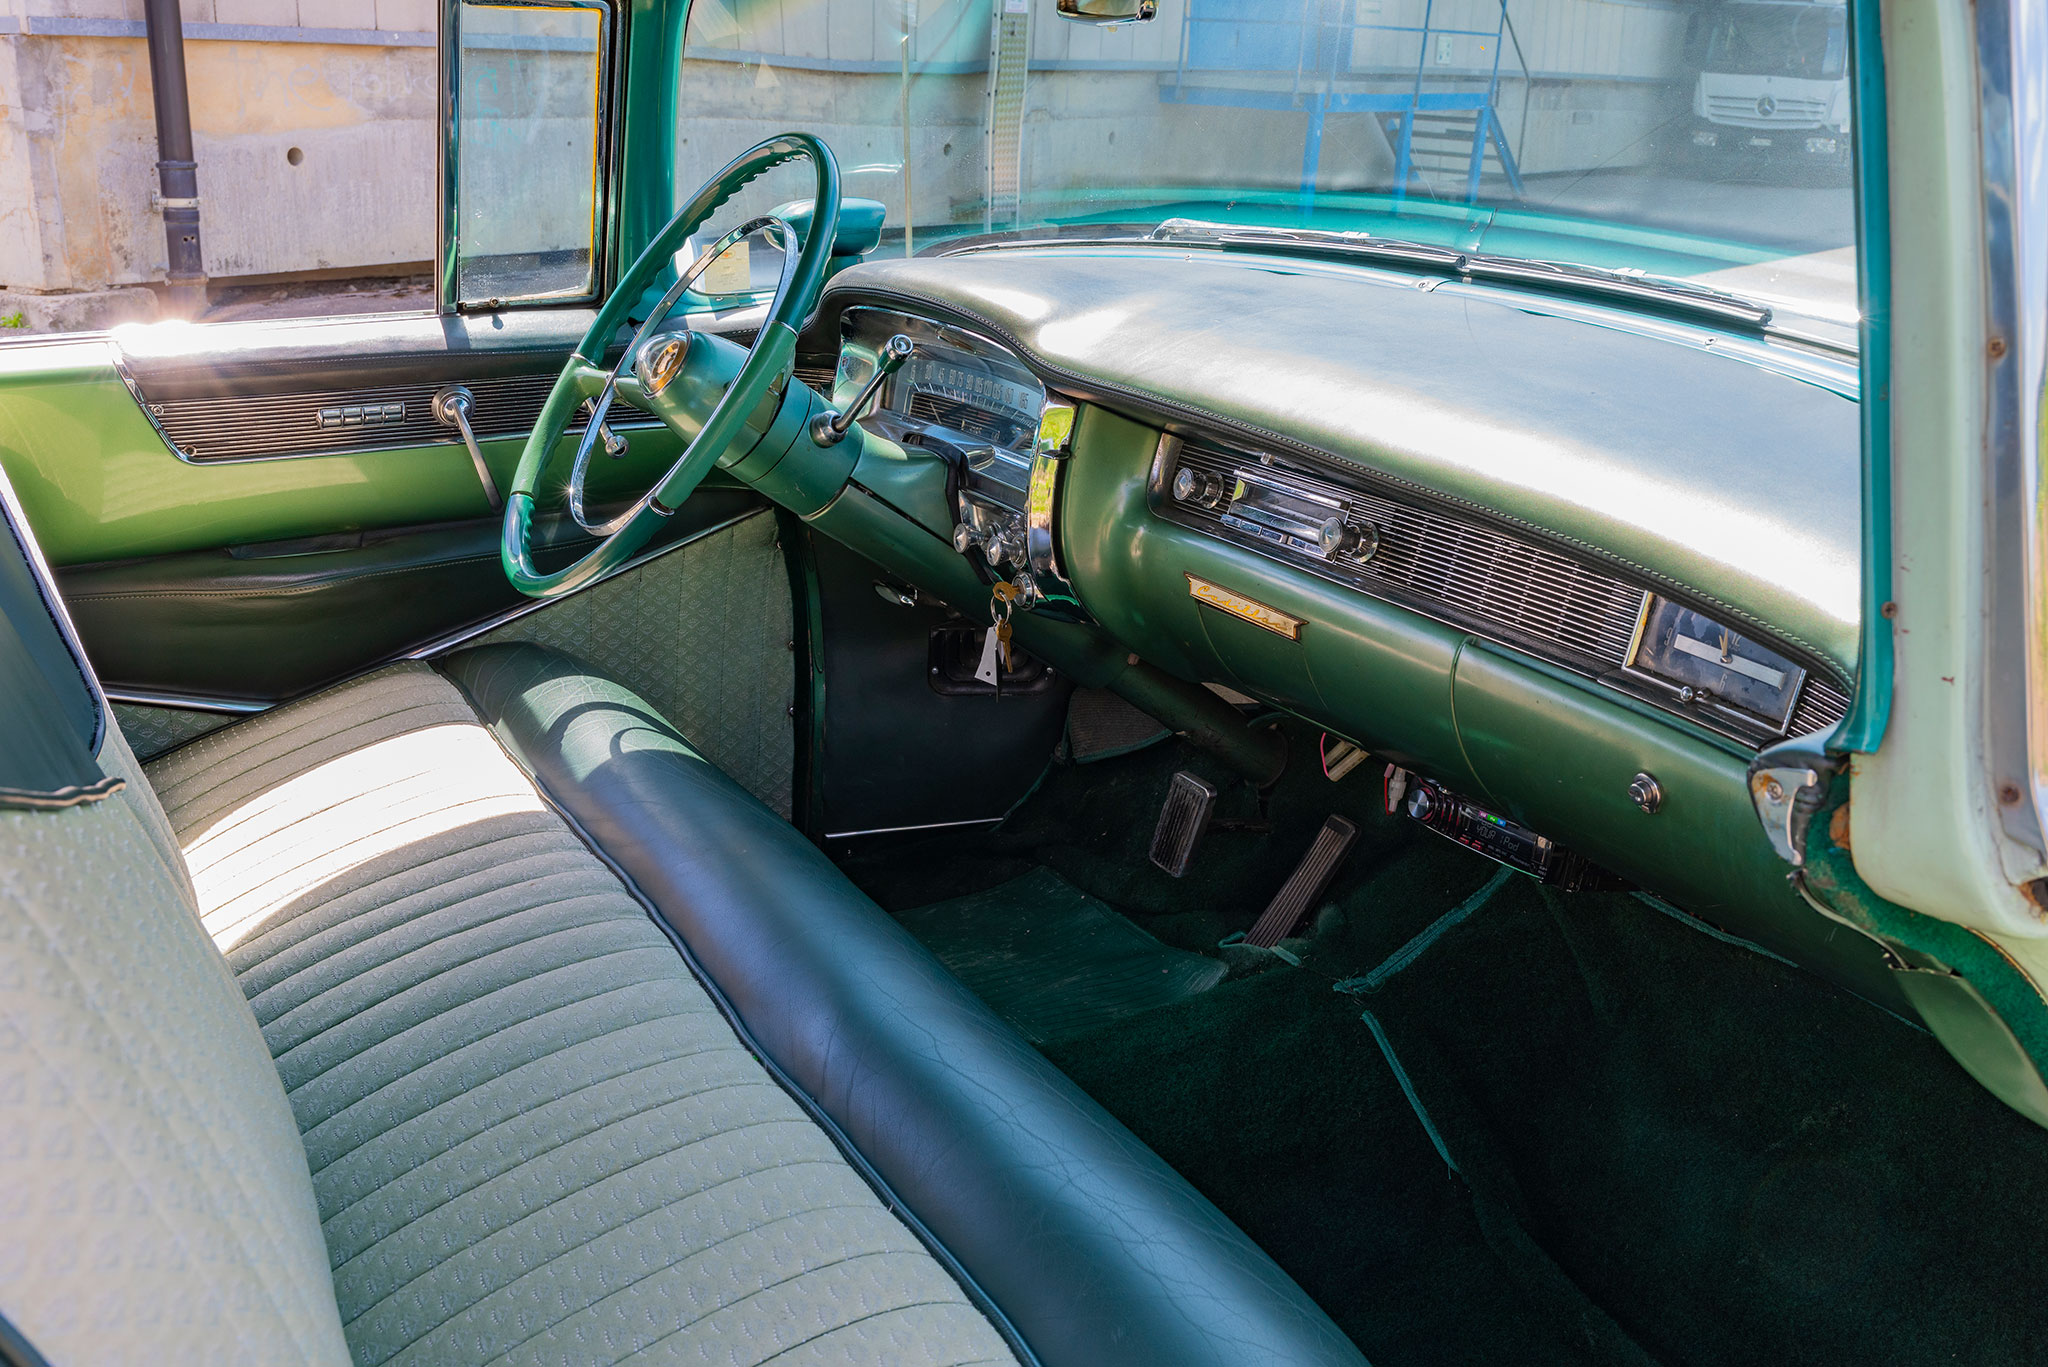 1954 Cadiilac Série 62 - Direction assistée. vitres électriques, boîte automatique, le standard chez Cadillac - Enchères au Swiss Classic World.